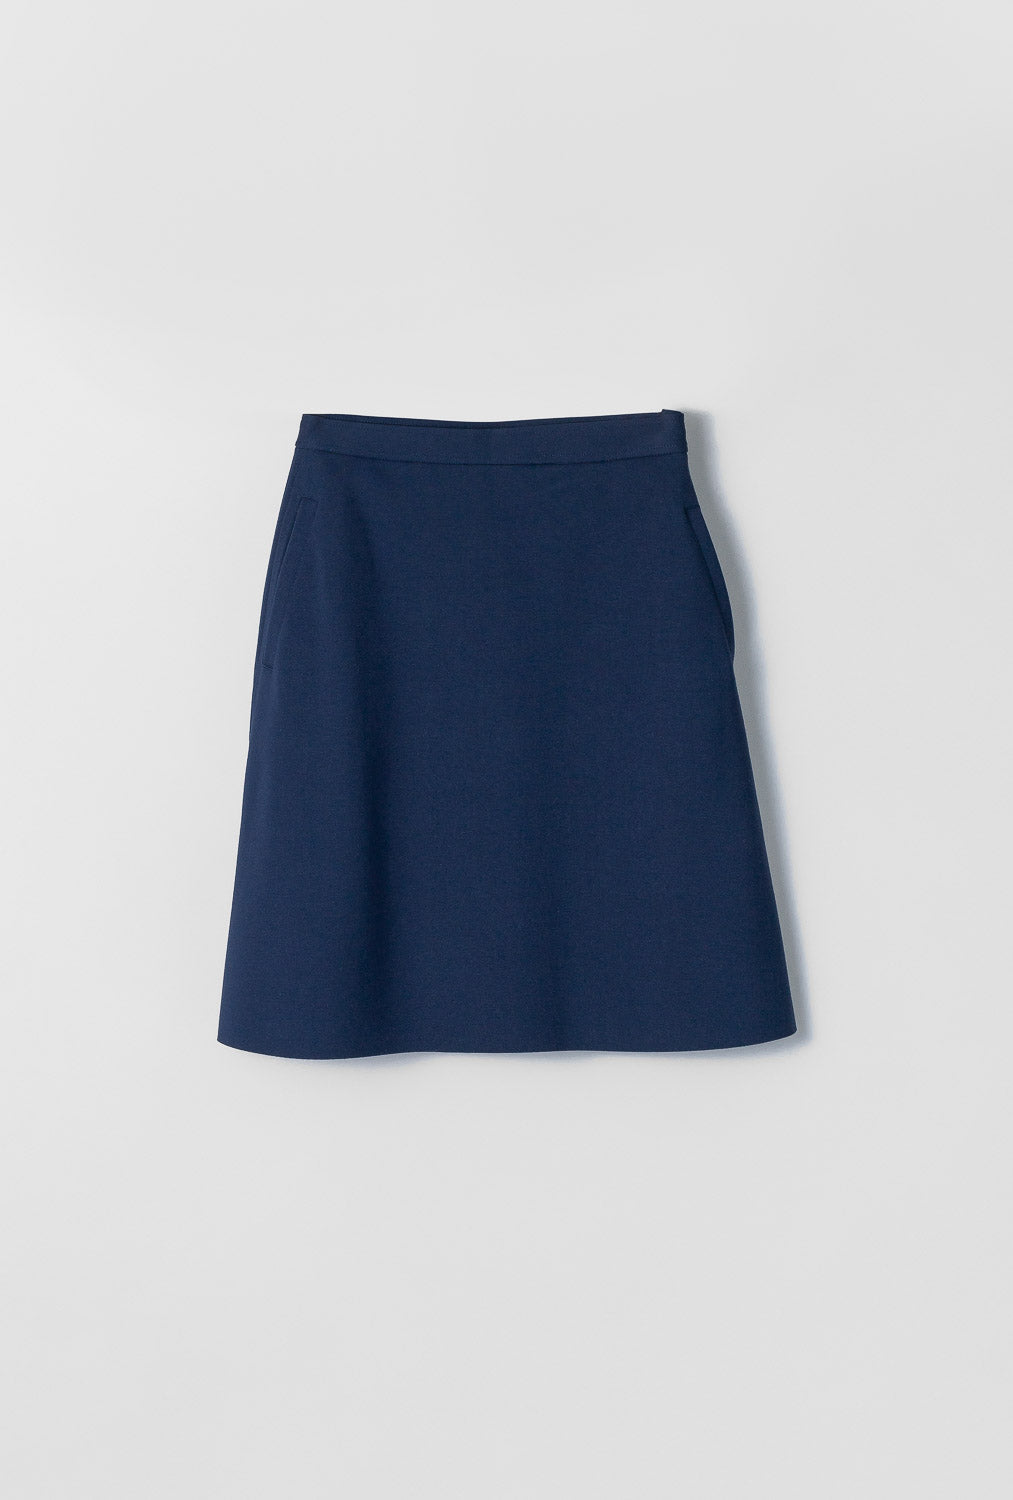 Anne Karin Short Navy Skirt